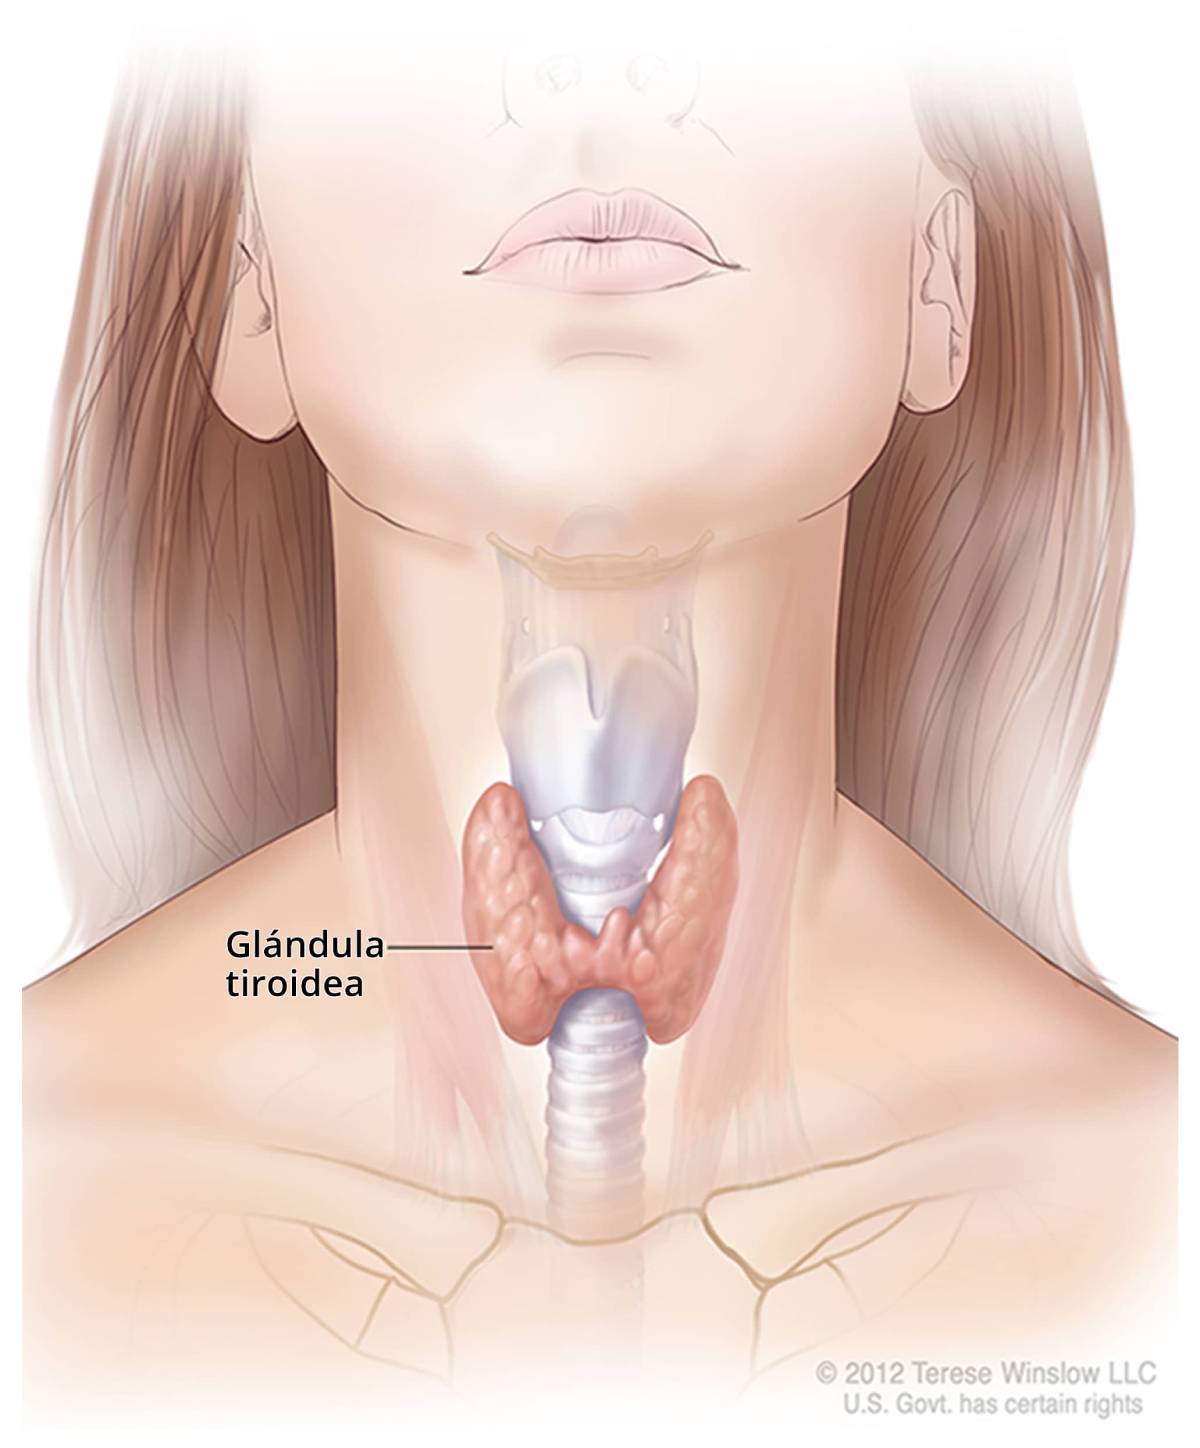 Ilustración de la tiroides y su ubicación en el cuello.